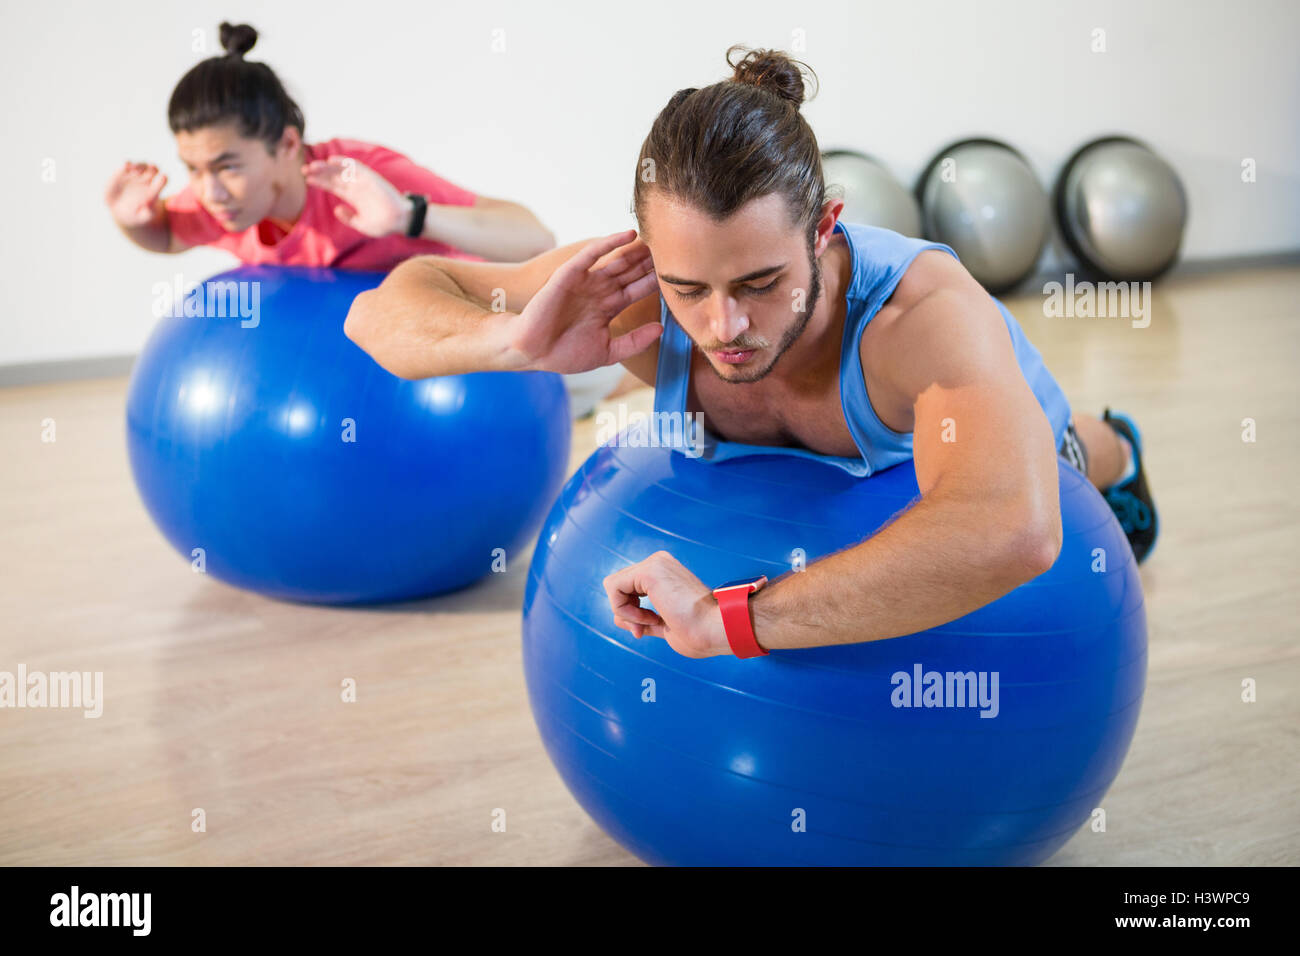 Men exercising on exercise ball Stock Photo